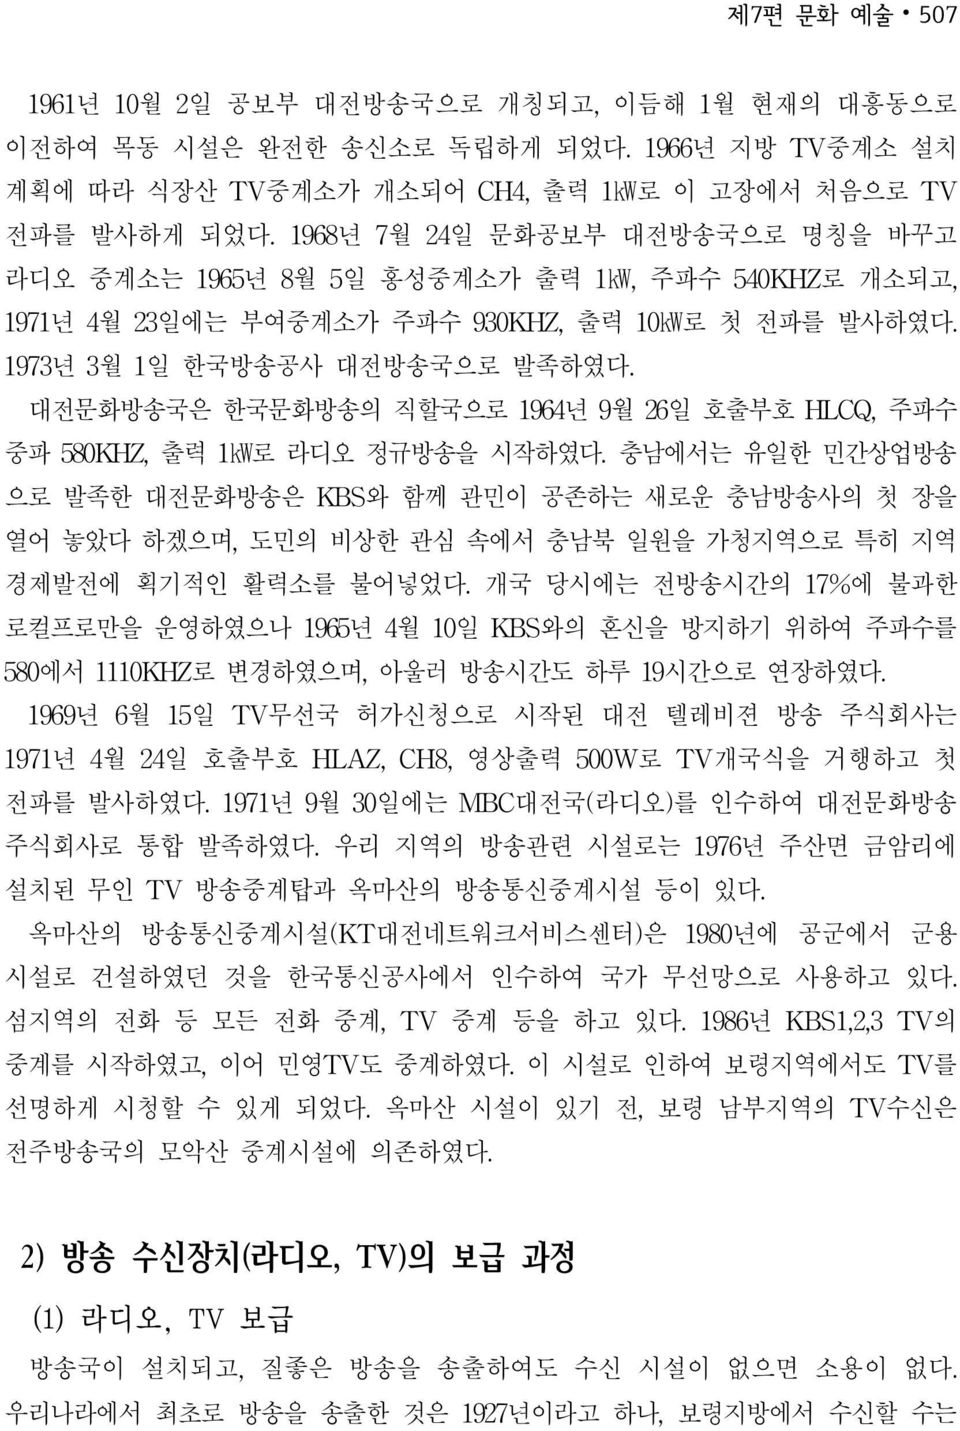 대전문화방송국은 한국문화방송의 직할국으로 년 월 일 호출부호 HLCQ,주파수 중파 KHZ,출력 로 라디오 정규방송을 시작하였다.